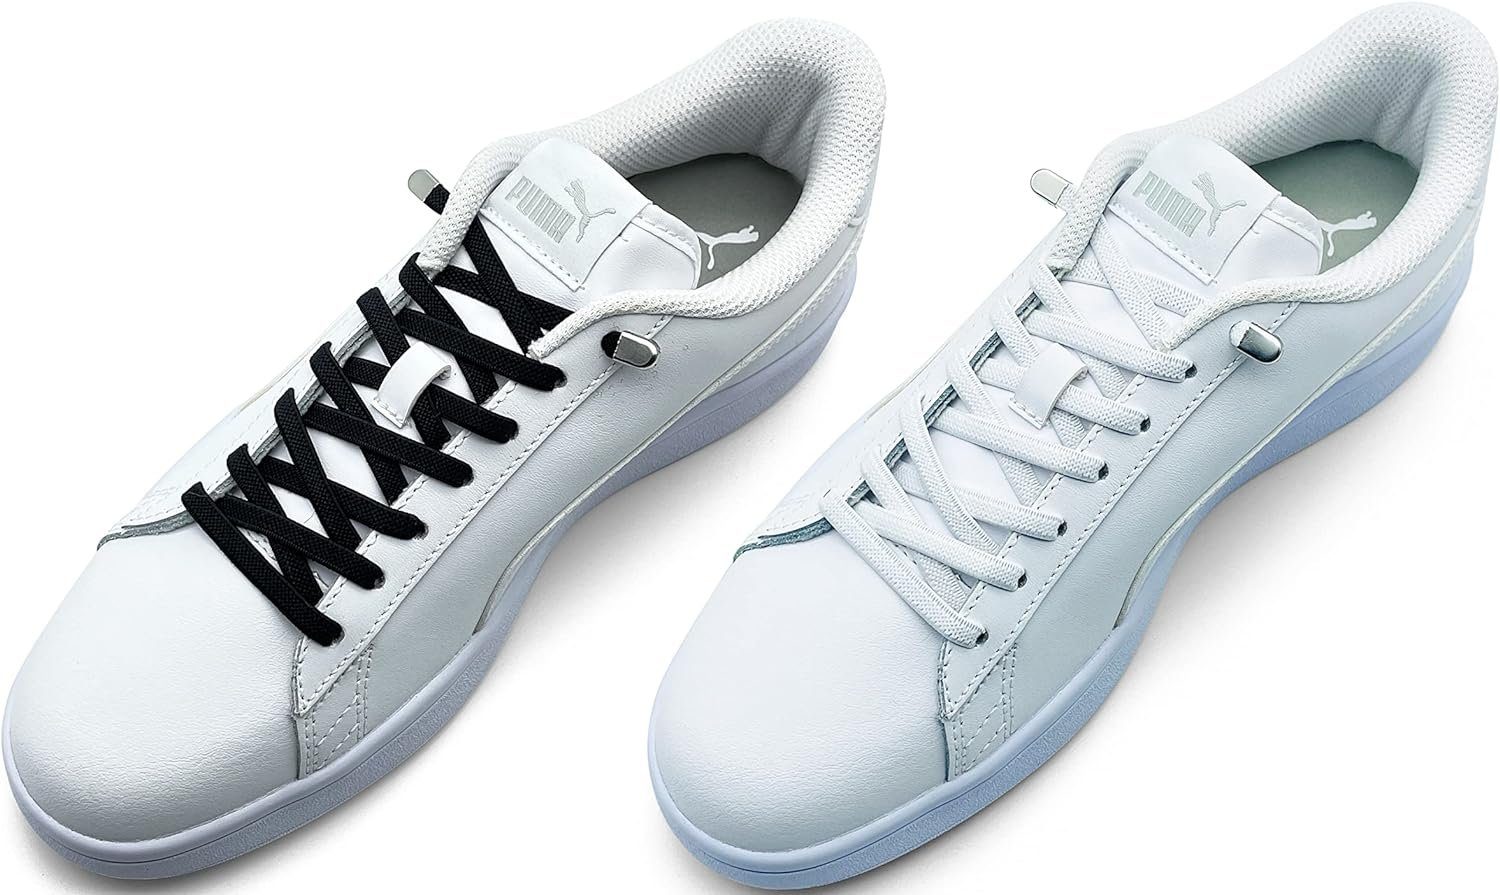 ELANOX Schnürsenkel 4 Stück für 2 Paar Schuhe elastische Schnürsenkel mit Clips, inkl. Enden (Clips) - 8 St. in silber schwarz + weiss